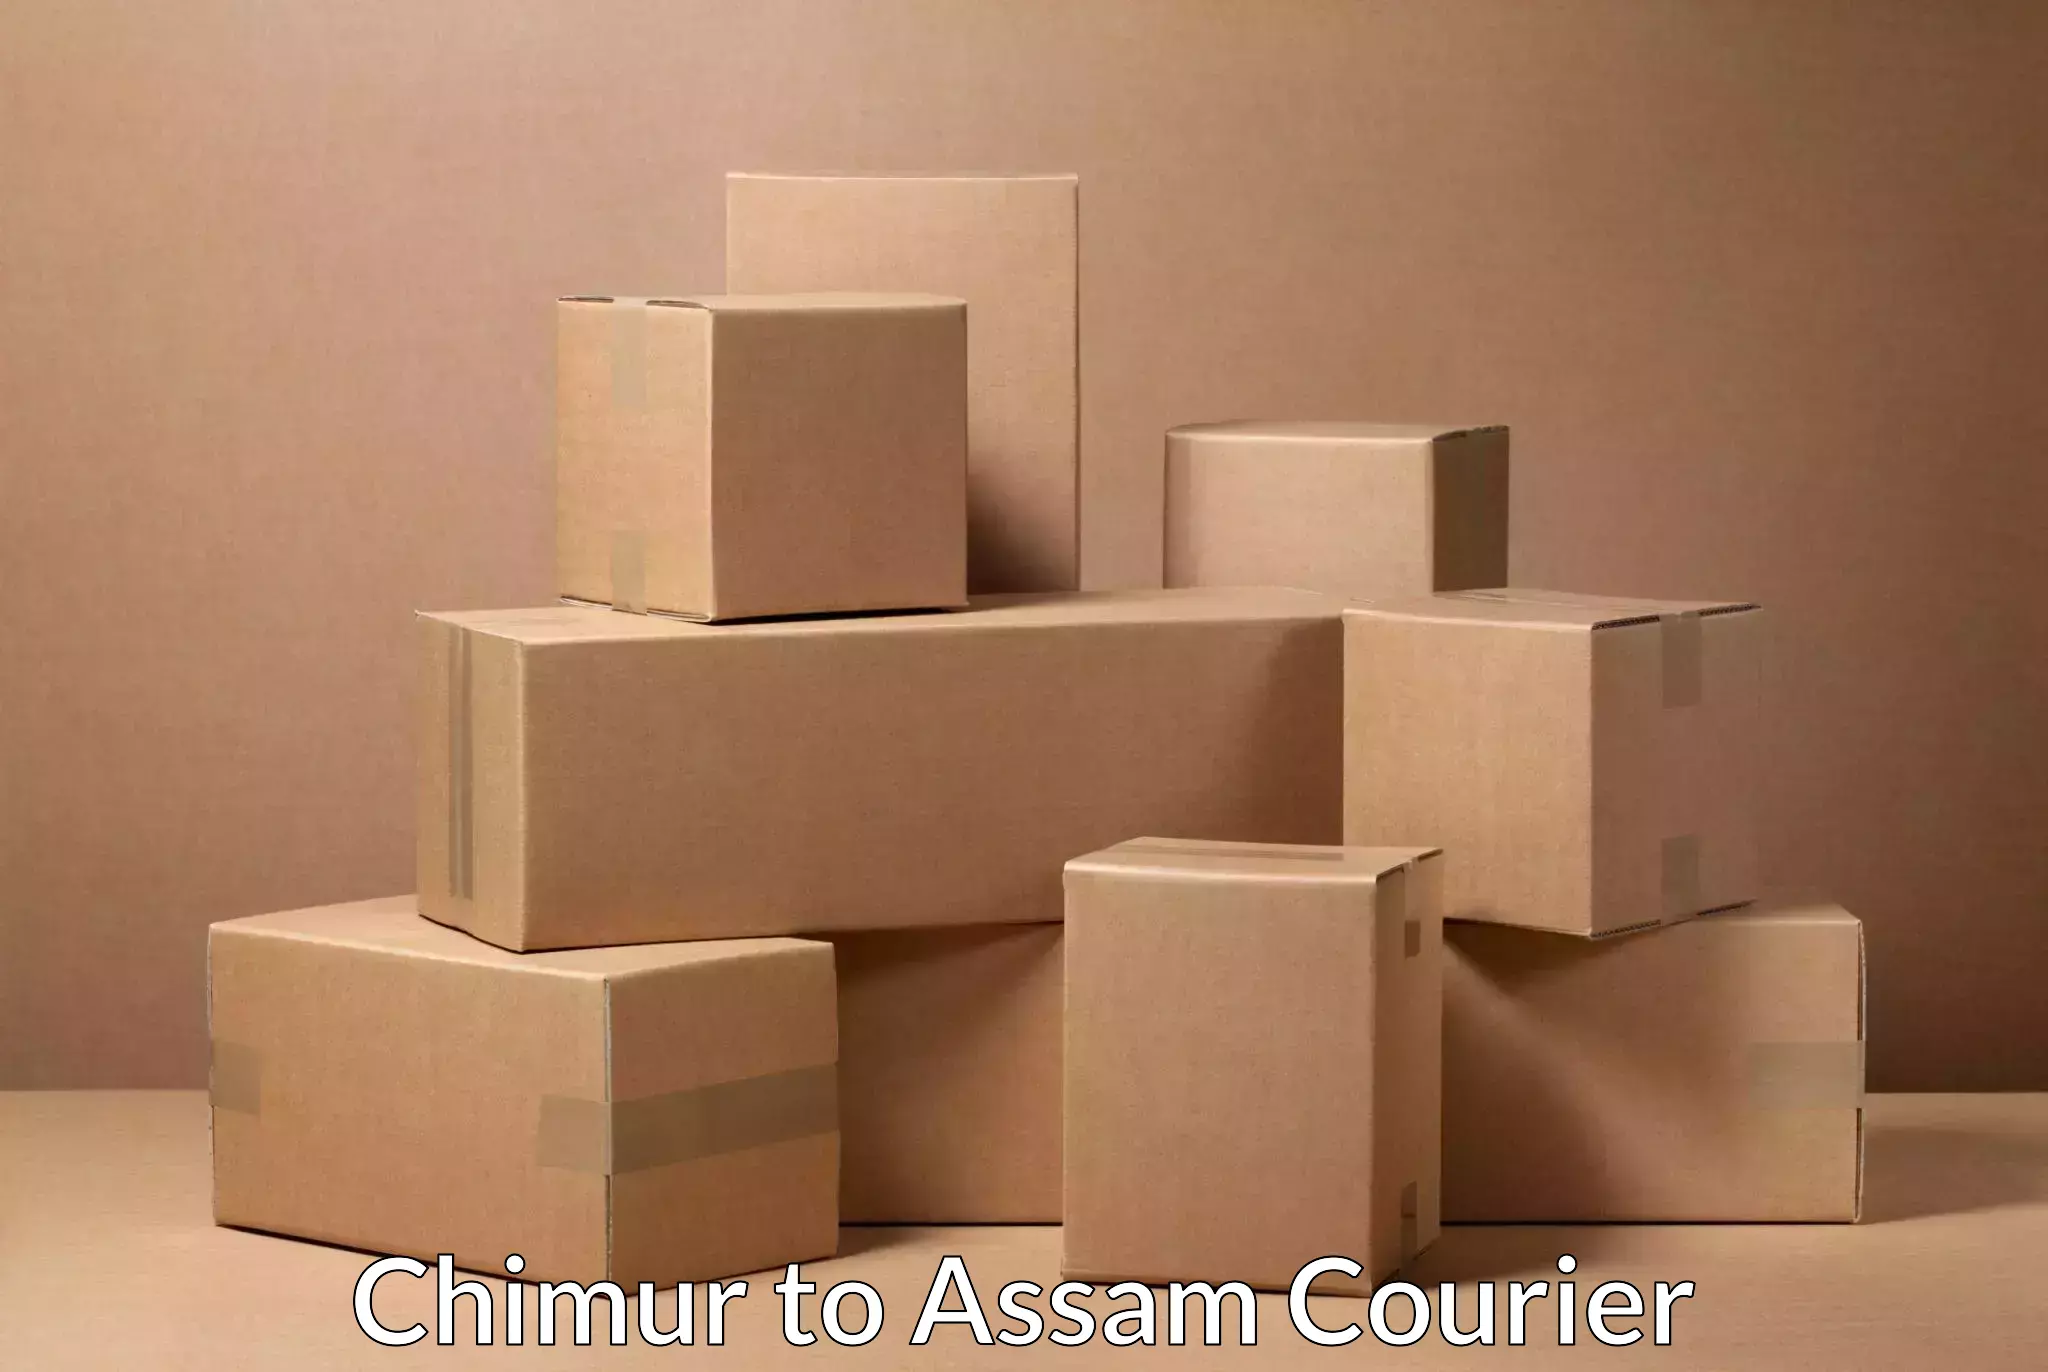 Efficient logistics management Chimur to Ramkrishna Nagar Karimganj